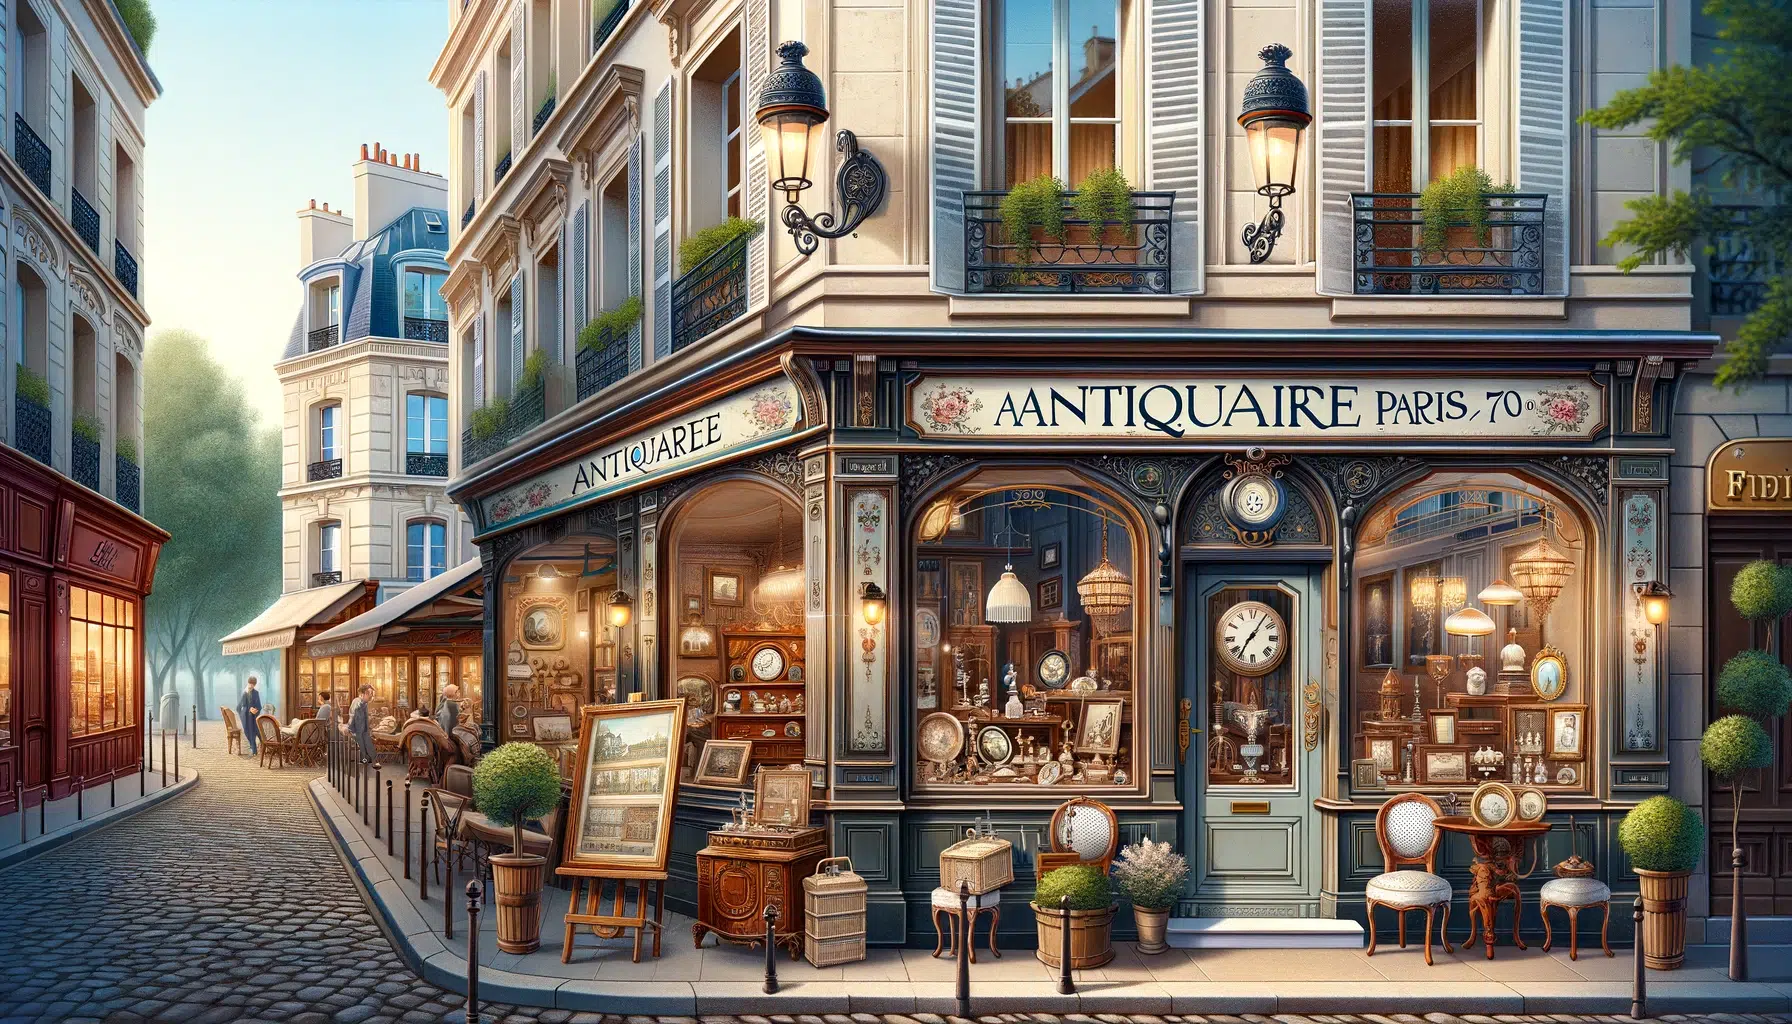 Une charmante scène illustrant une boutique d’antiquités à Paris située dans le 75009 arrondissement. La boutique dispose d’une élégante devanture avec un vintage